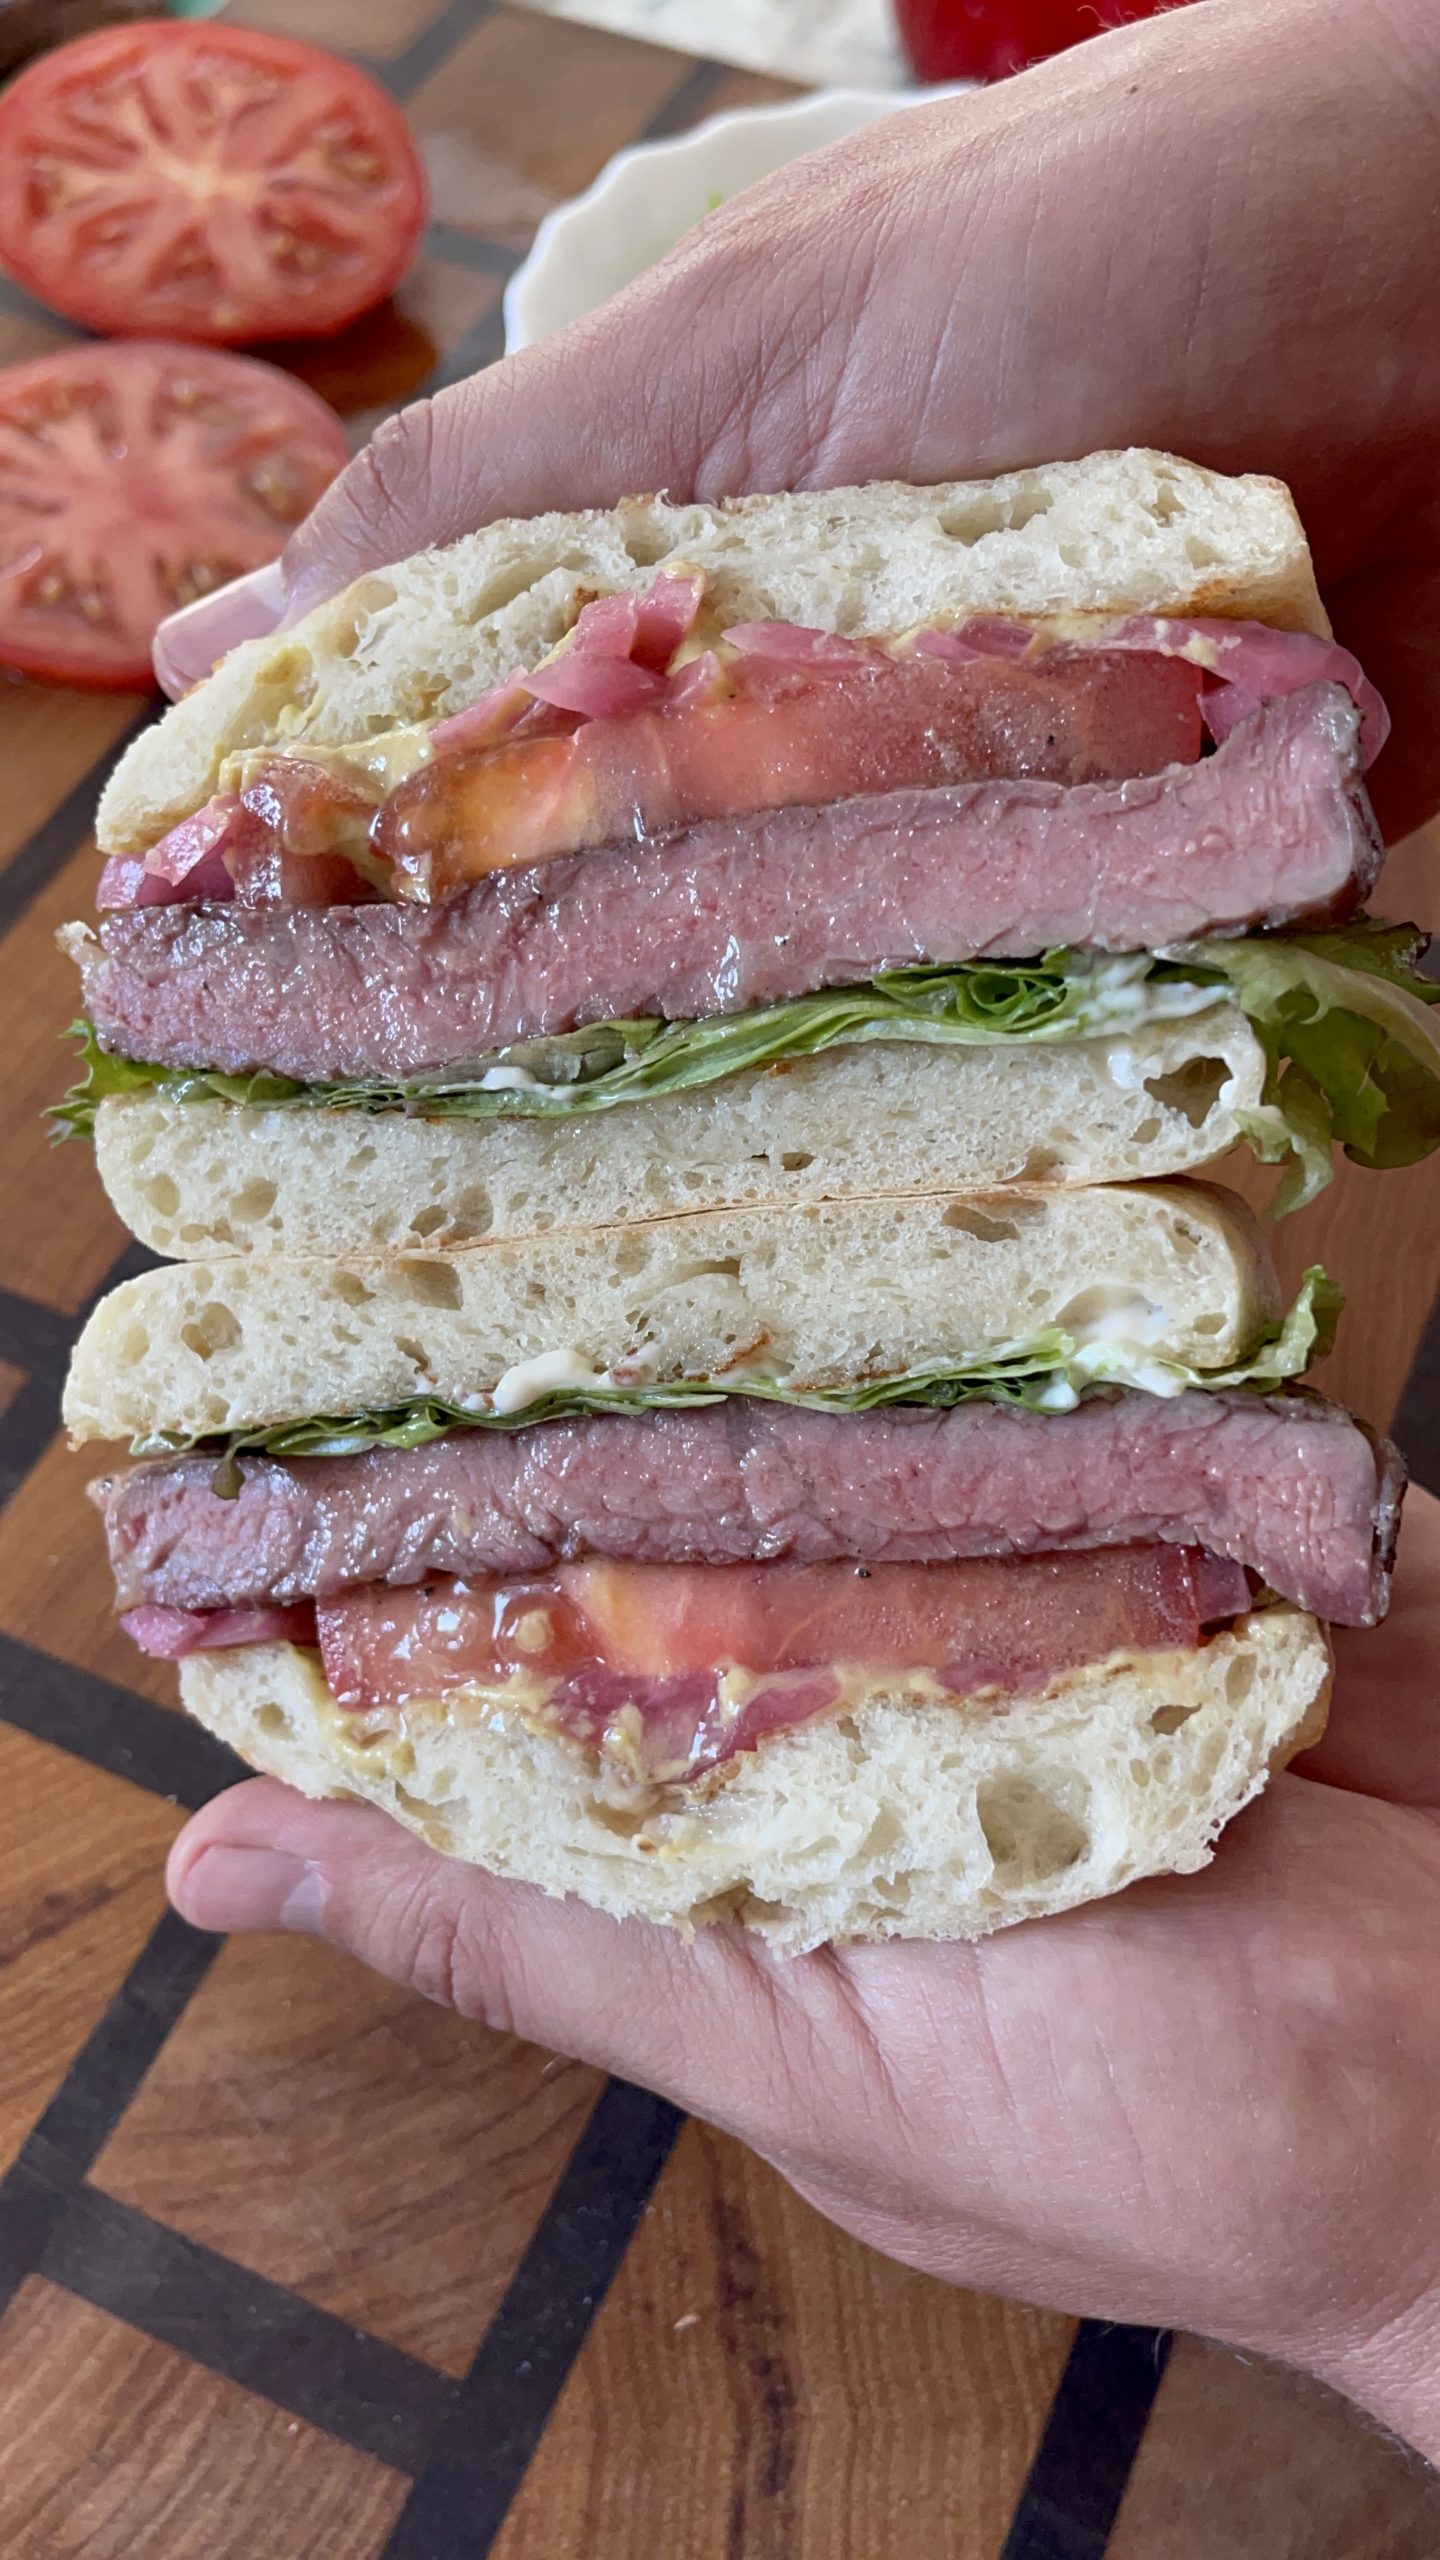 Maciek’s Ribeye Steak Sandwich